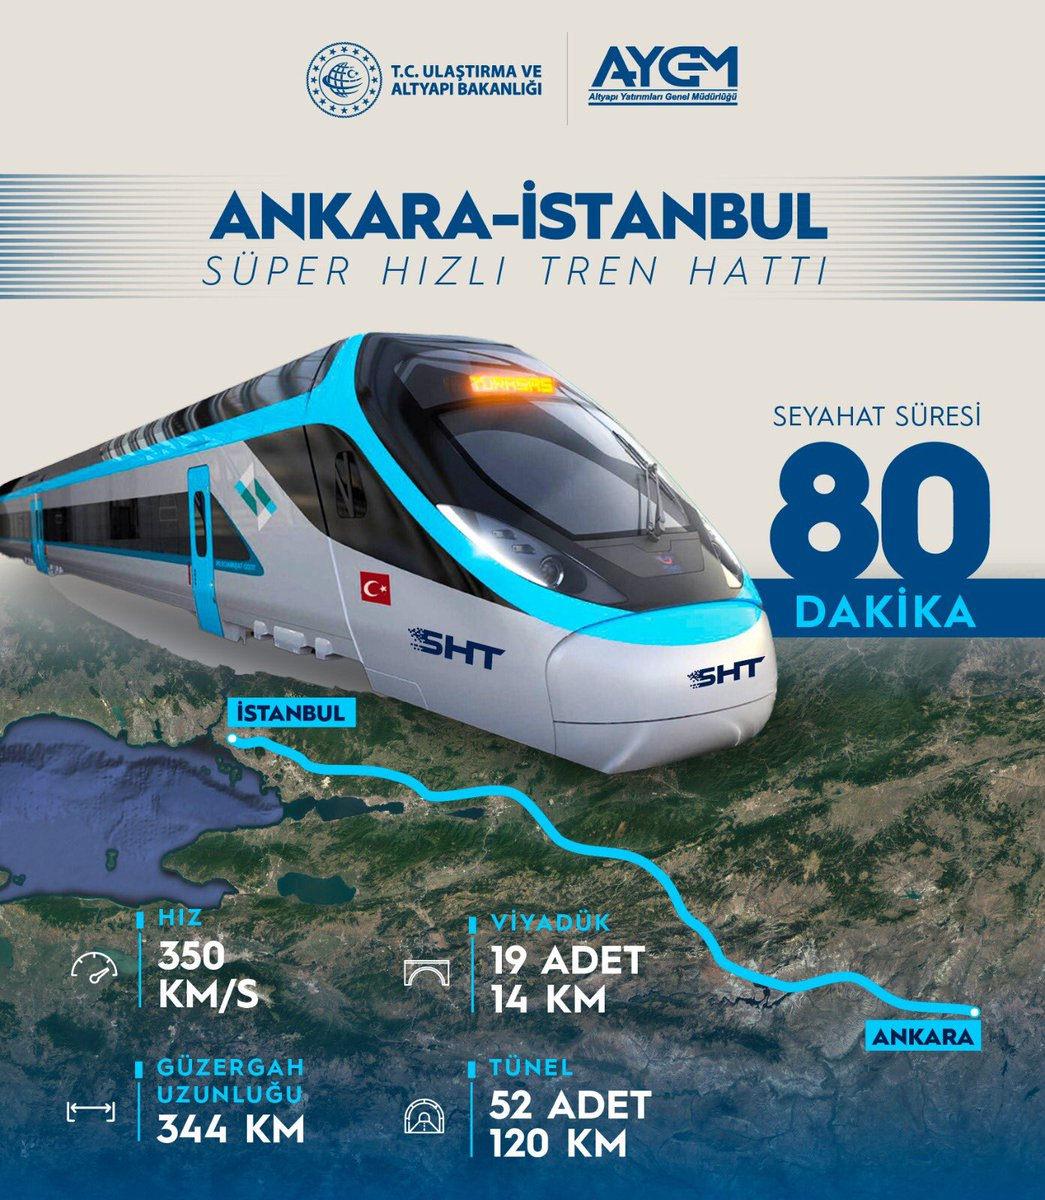 Ankara İstanbul SHT Hattı'nda 52 adet 120 kilometre uzunluğunda tünel, 19 adet 14 kilometre uzunluğunda viyadük inşası planlanıyor.